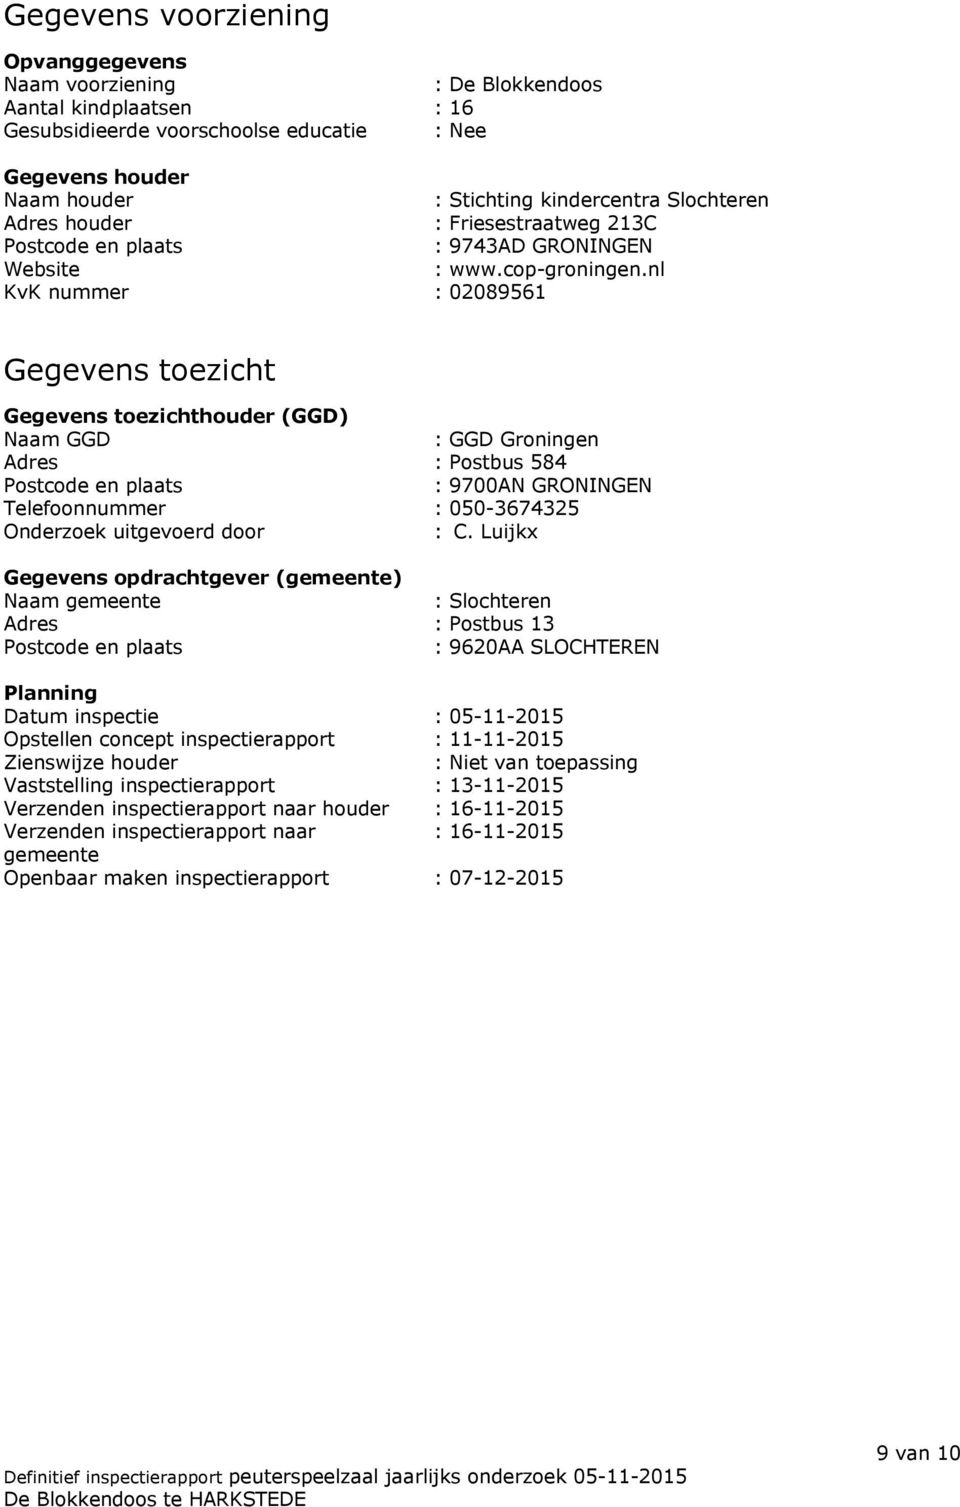 nl KvK nummer : 02089561 Gegevens toezicht Gegevens toezichthouder (GGD) Naam GGD : GGD Groningen Adres : Postbus 584 Postcode en plaats : 9700AN GRONINGEN Telefoonnummer : 050-3674325 Onderzoek